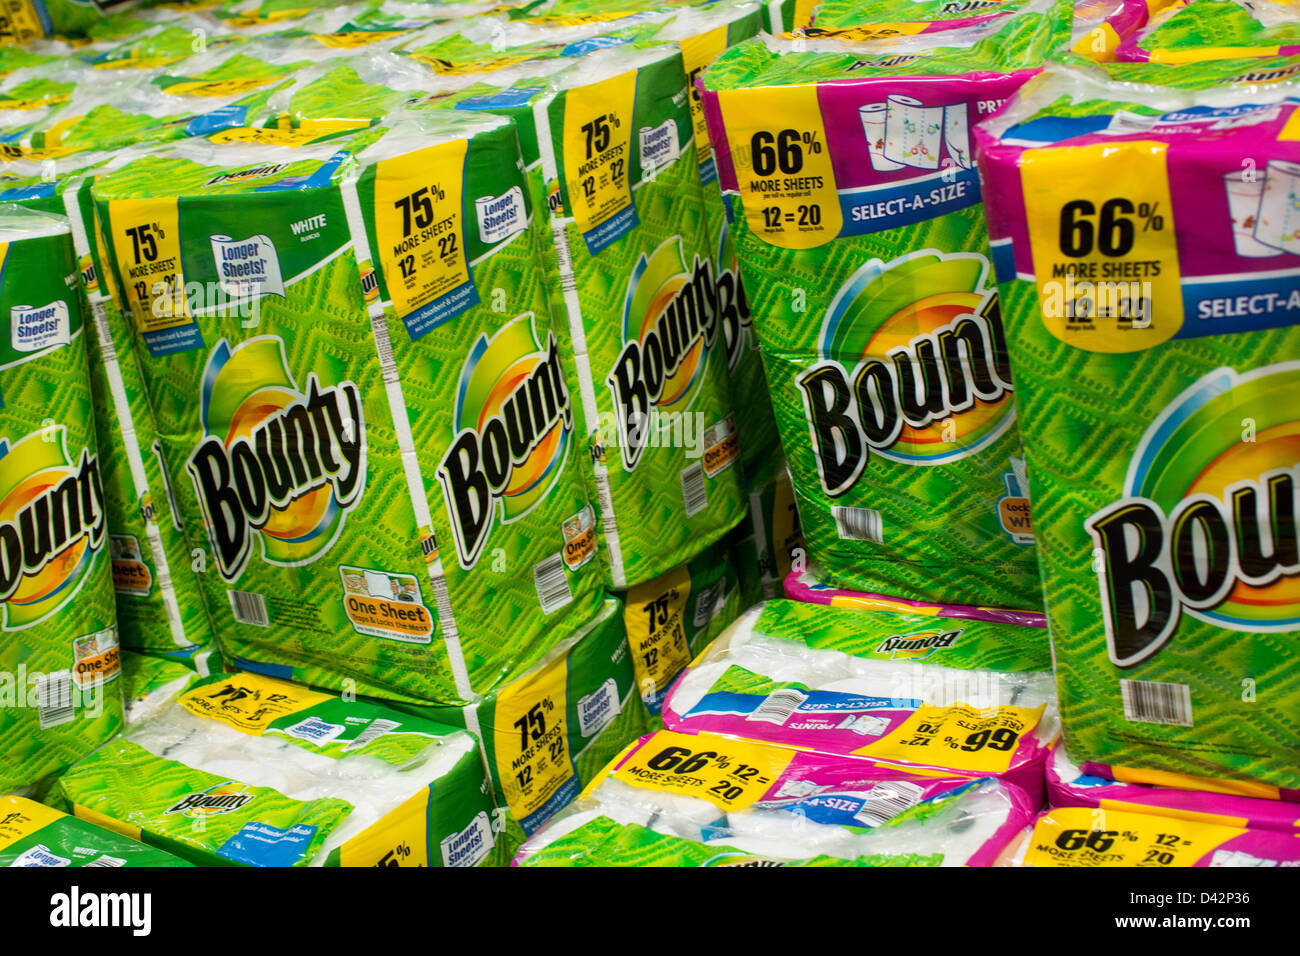 Bounty asciugamani di carta sul visualizzatore in corrispondenza di un Costco Wholesale Club magazzino. Foto Stock